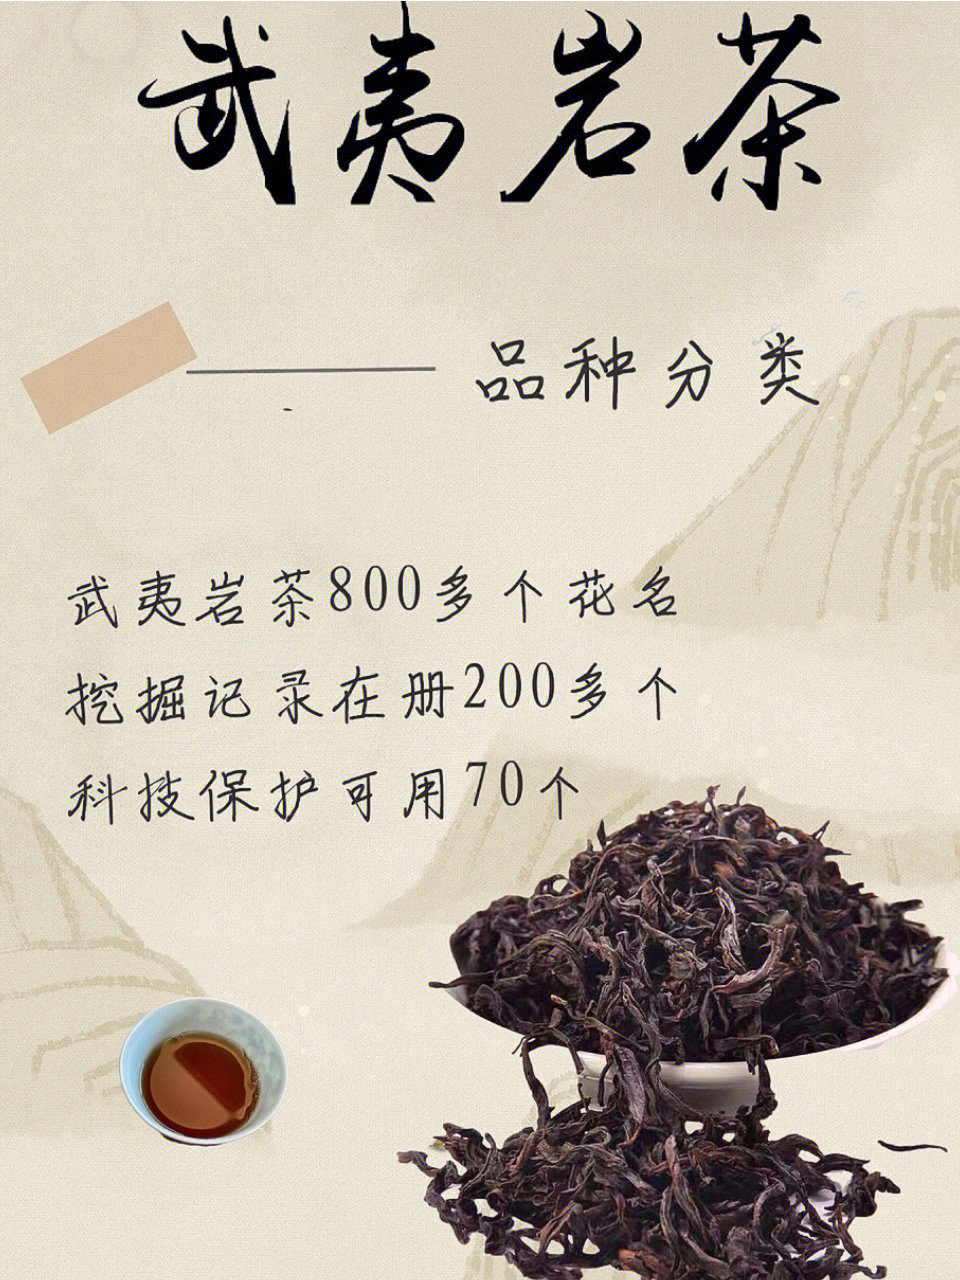 本片文章认真整理春干货详细讲解种类繁多的武夷岩茶分类,值得收藏